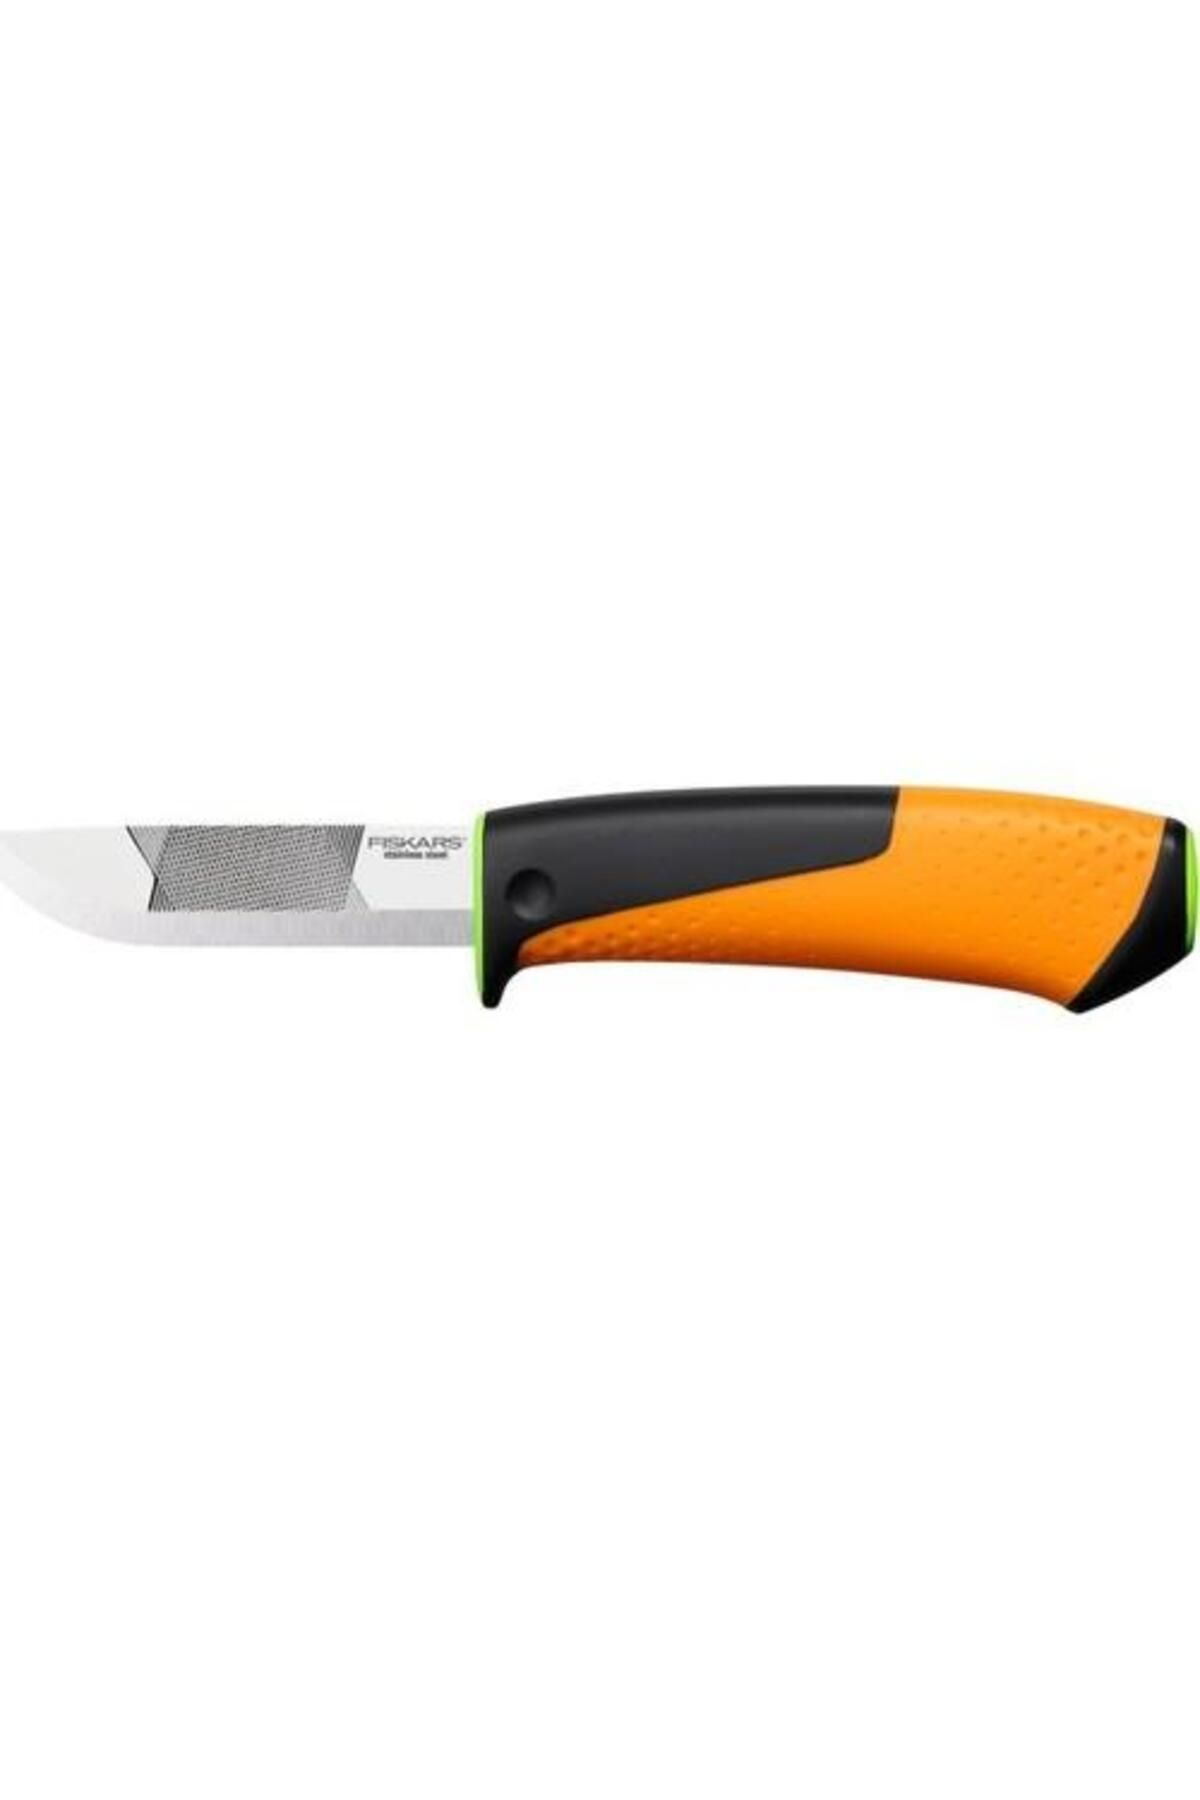 FiSKARS Genel Kullanım Ağır Iş Bıçağı 156018-1023619